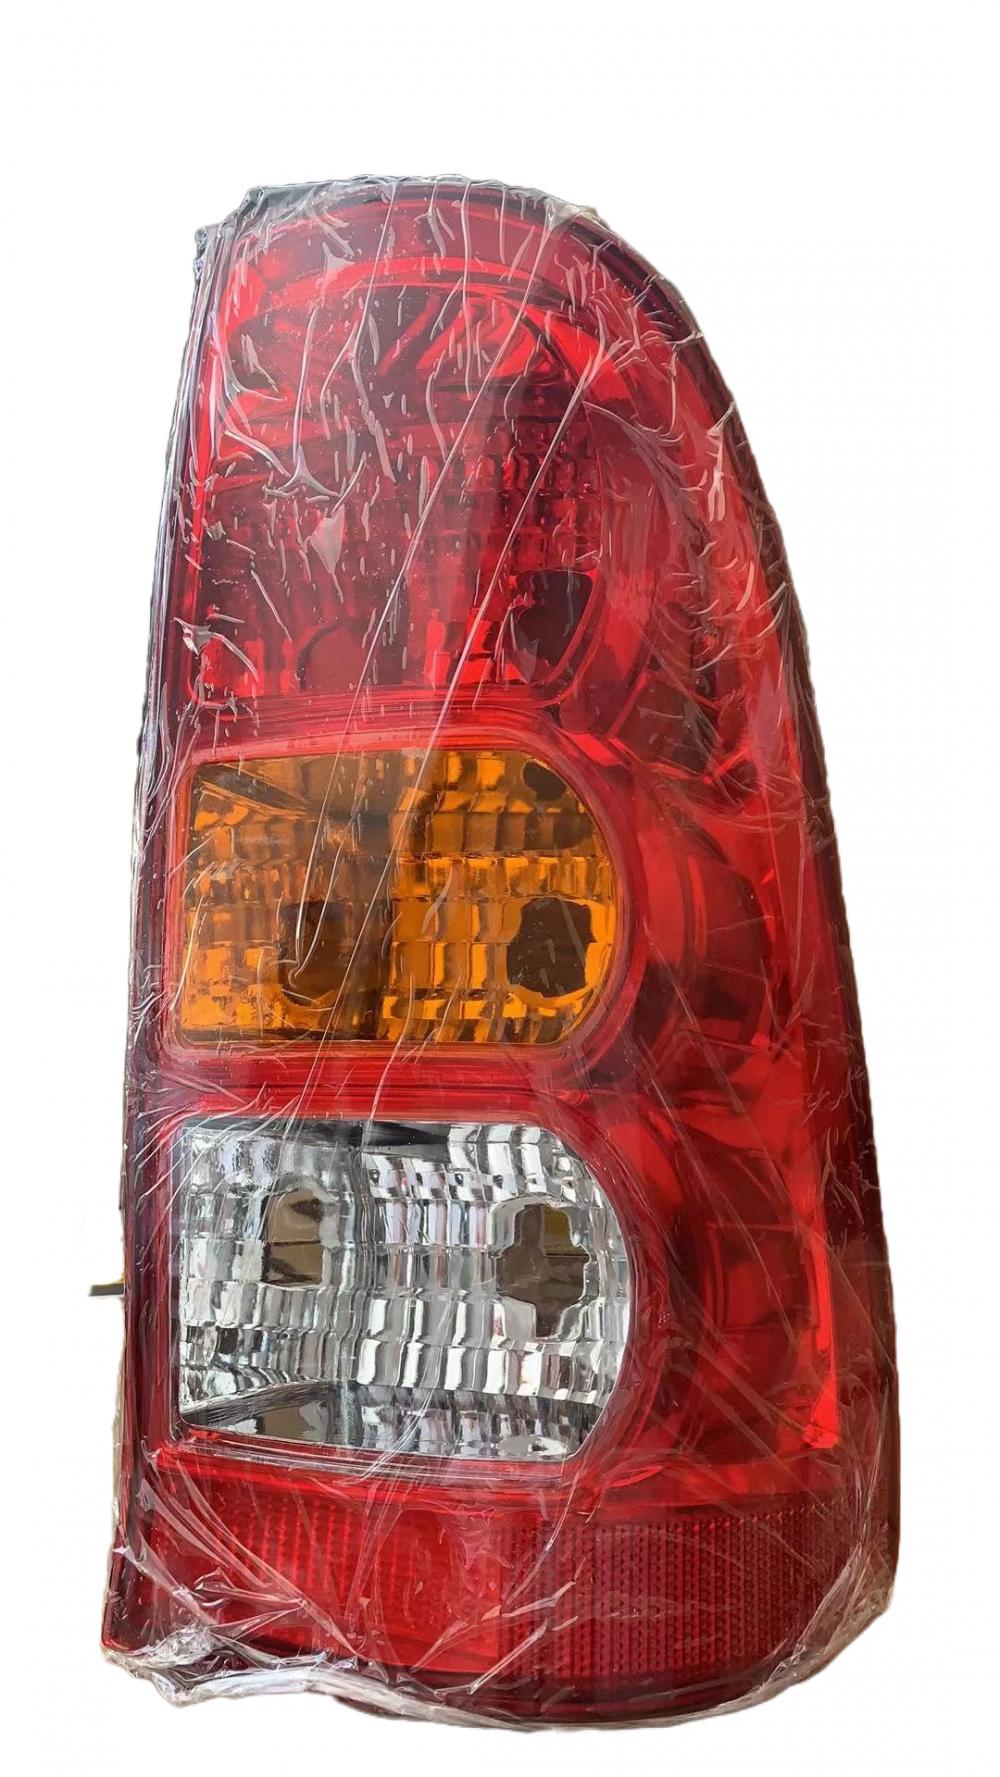 LED des feux arrière brillants personnalisés Toyota Hilux 2005